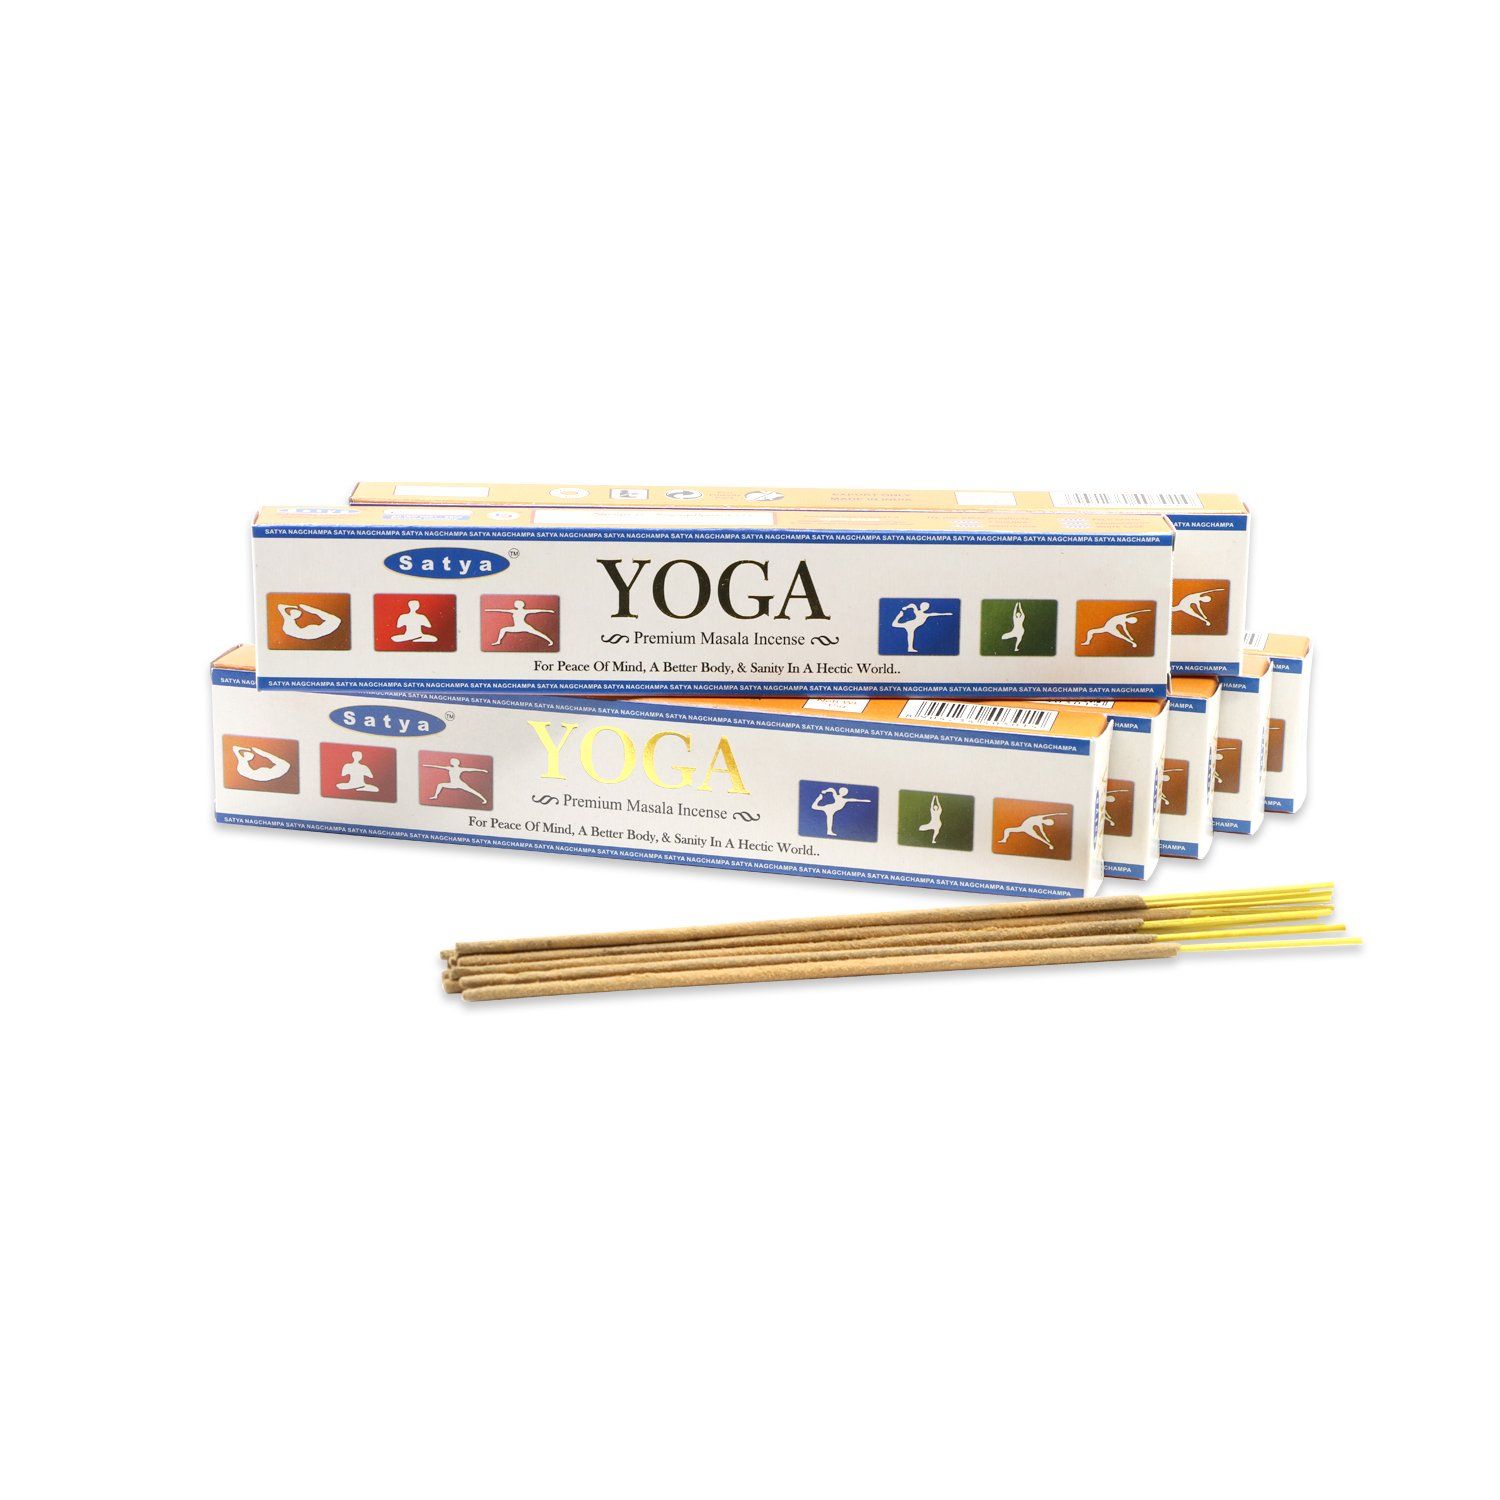 Сатья премиум благовония Йога,15г. Satya Premium Masala Incense Joga.